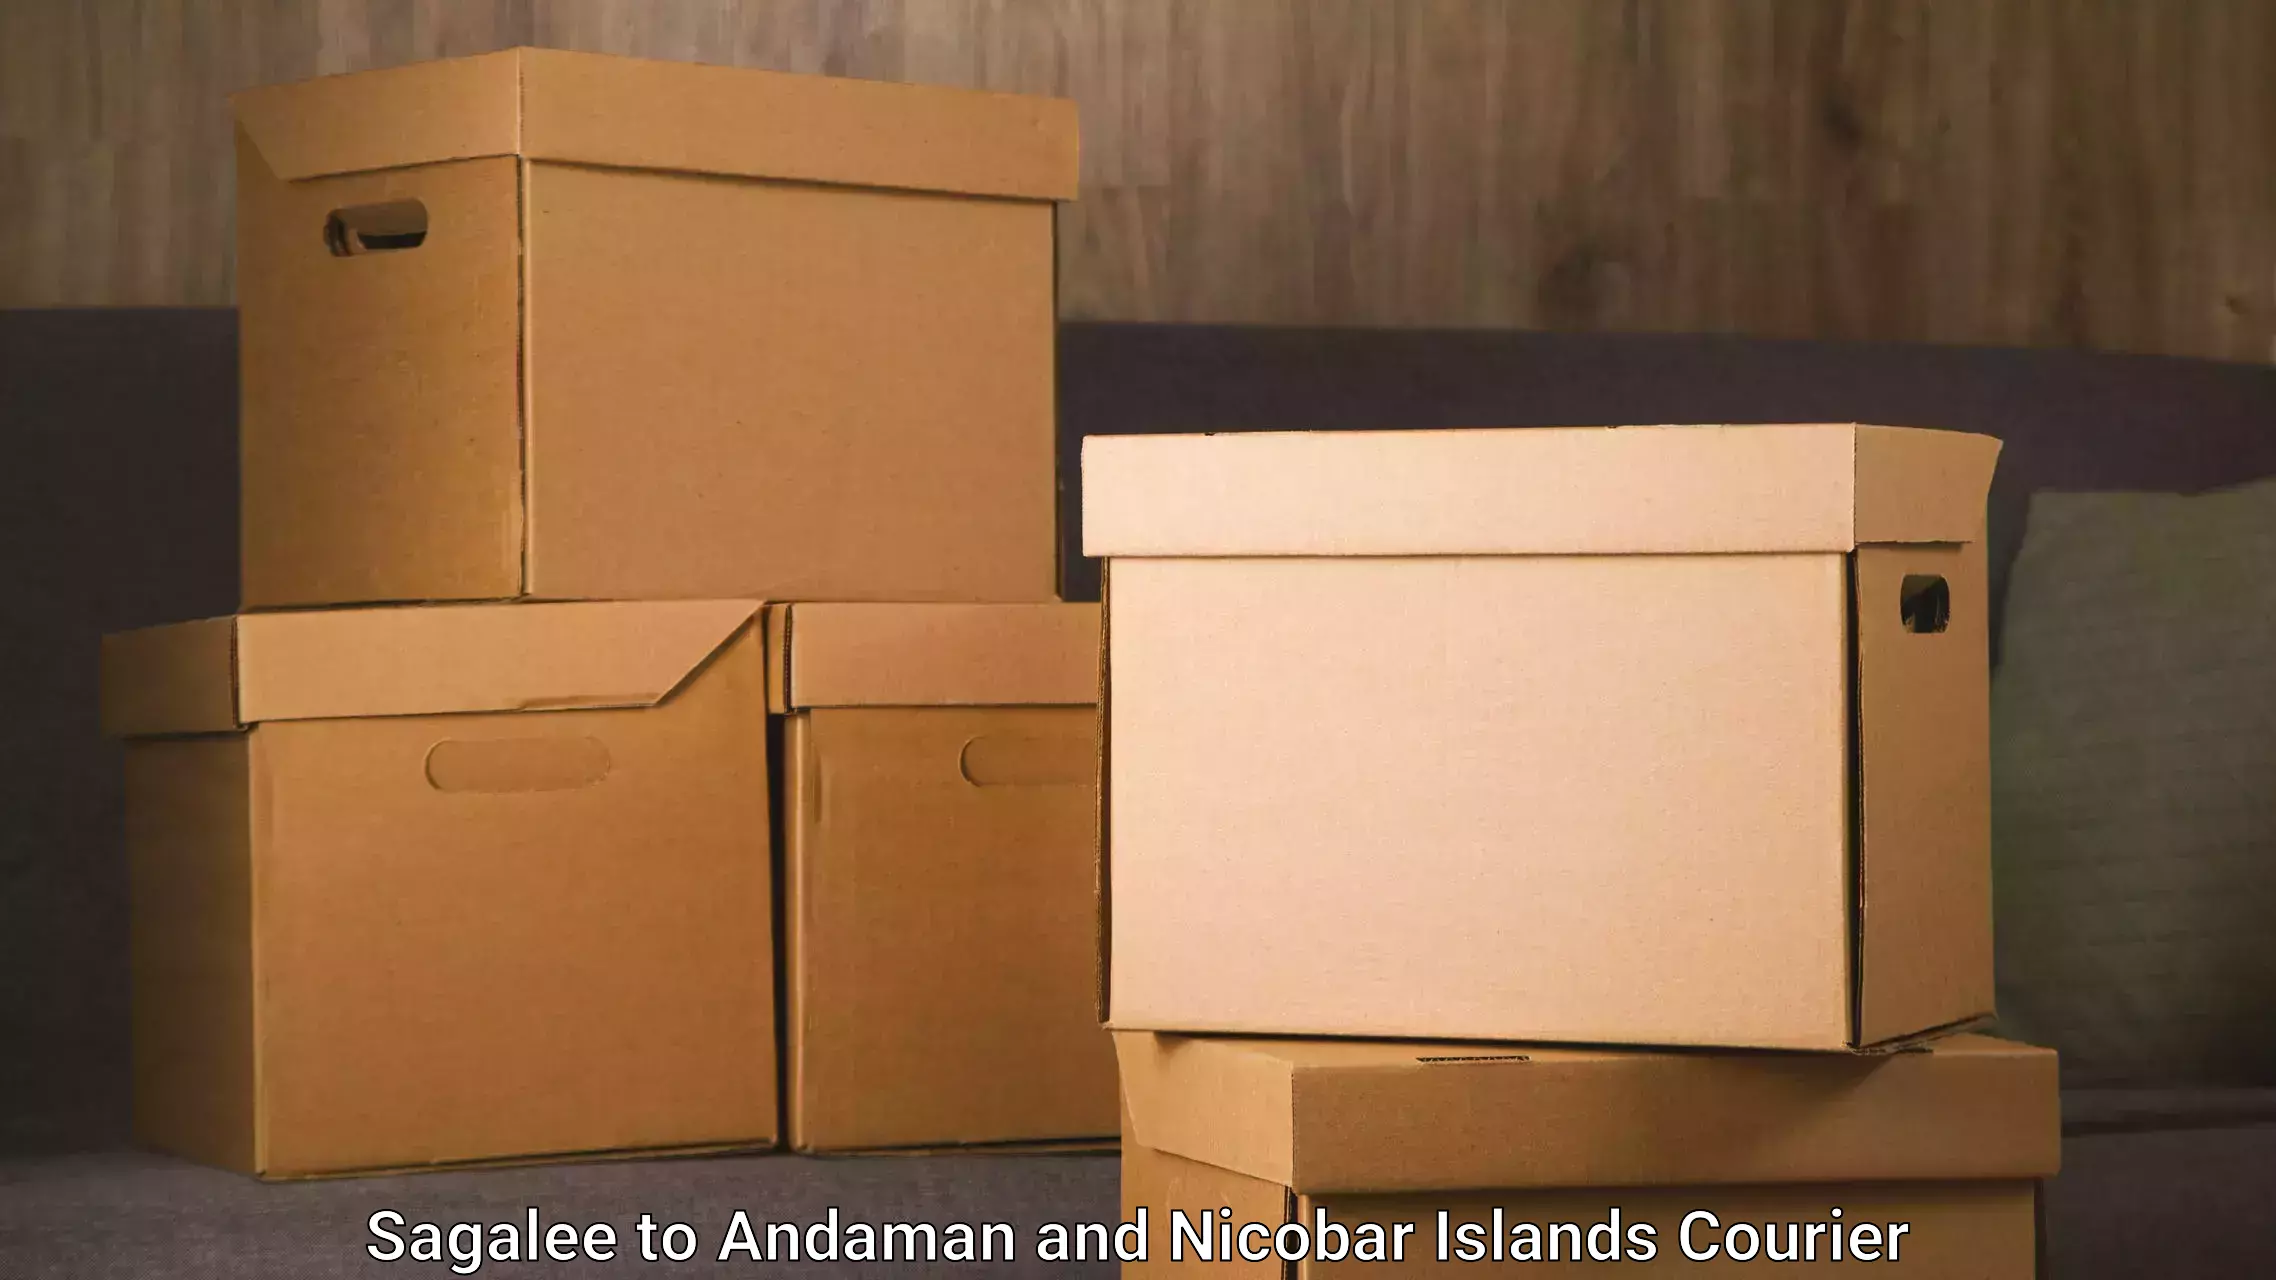 Express logistics Sagalee to Andaman and Nicobar Islands